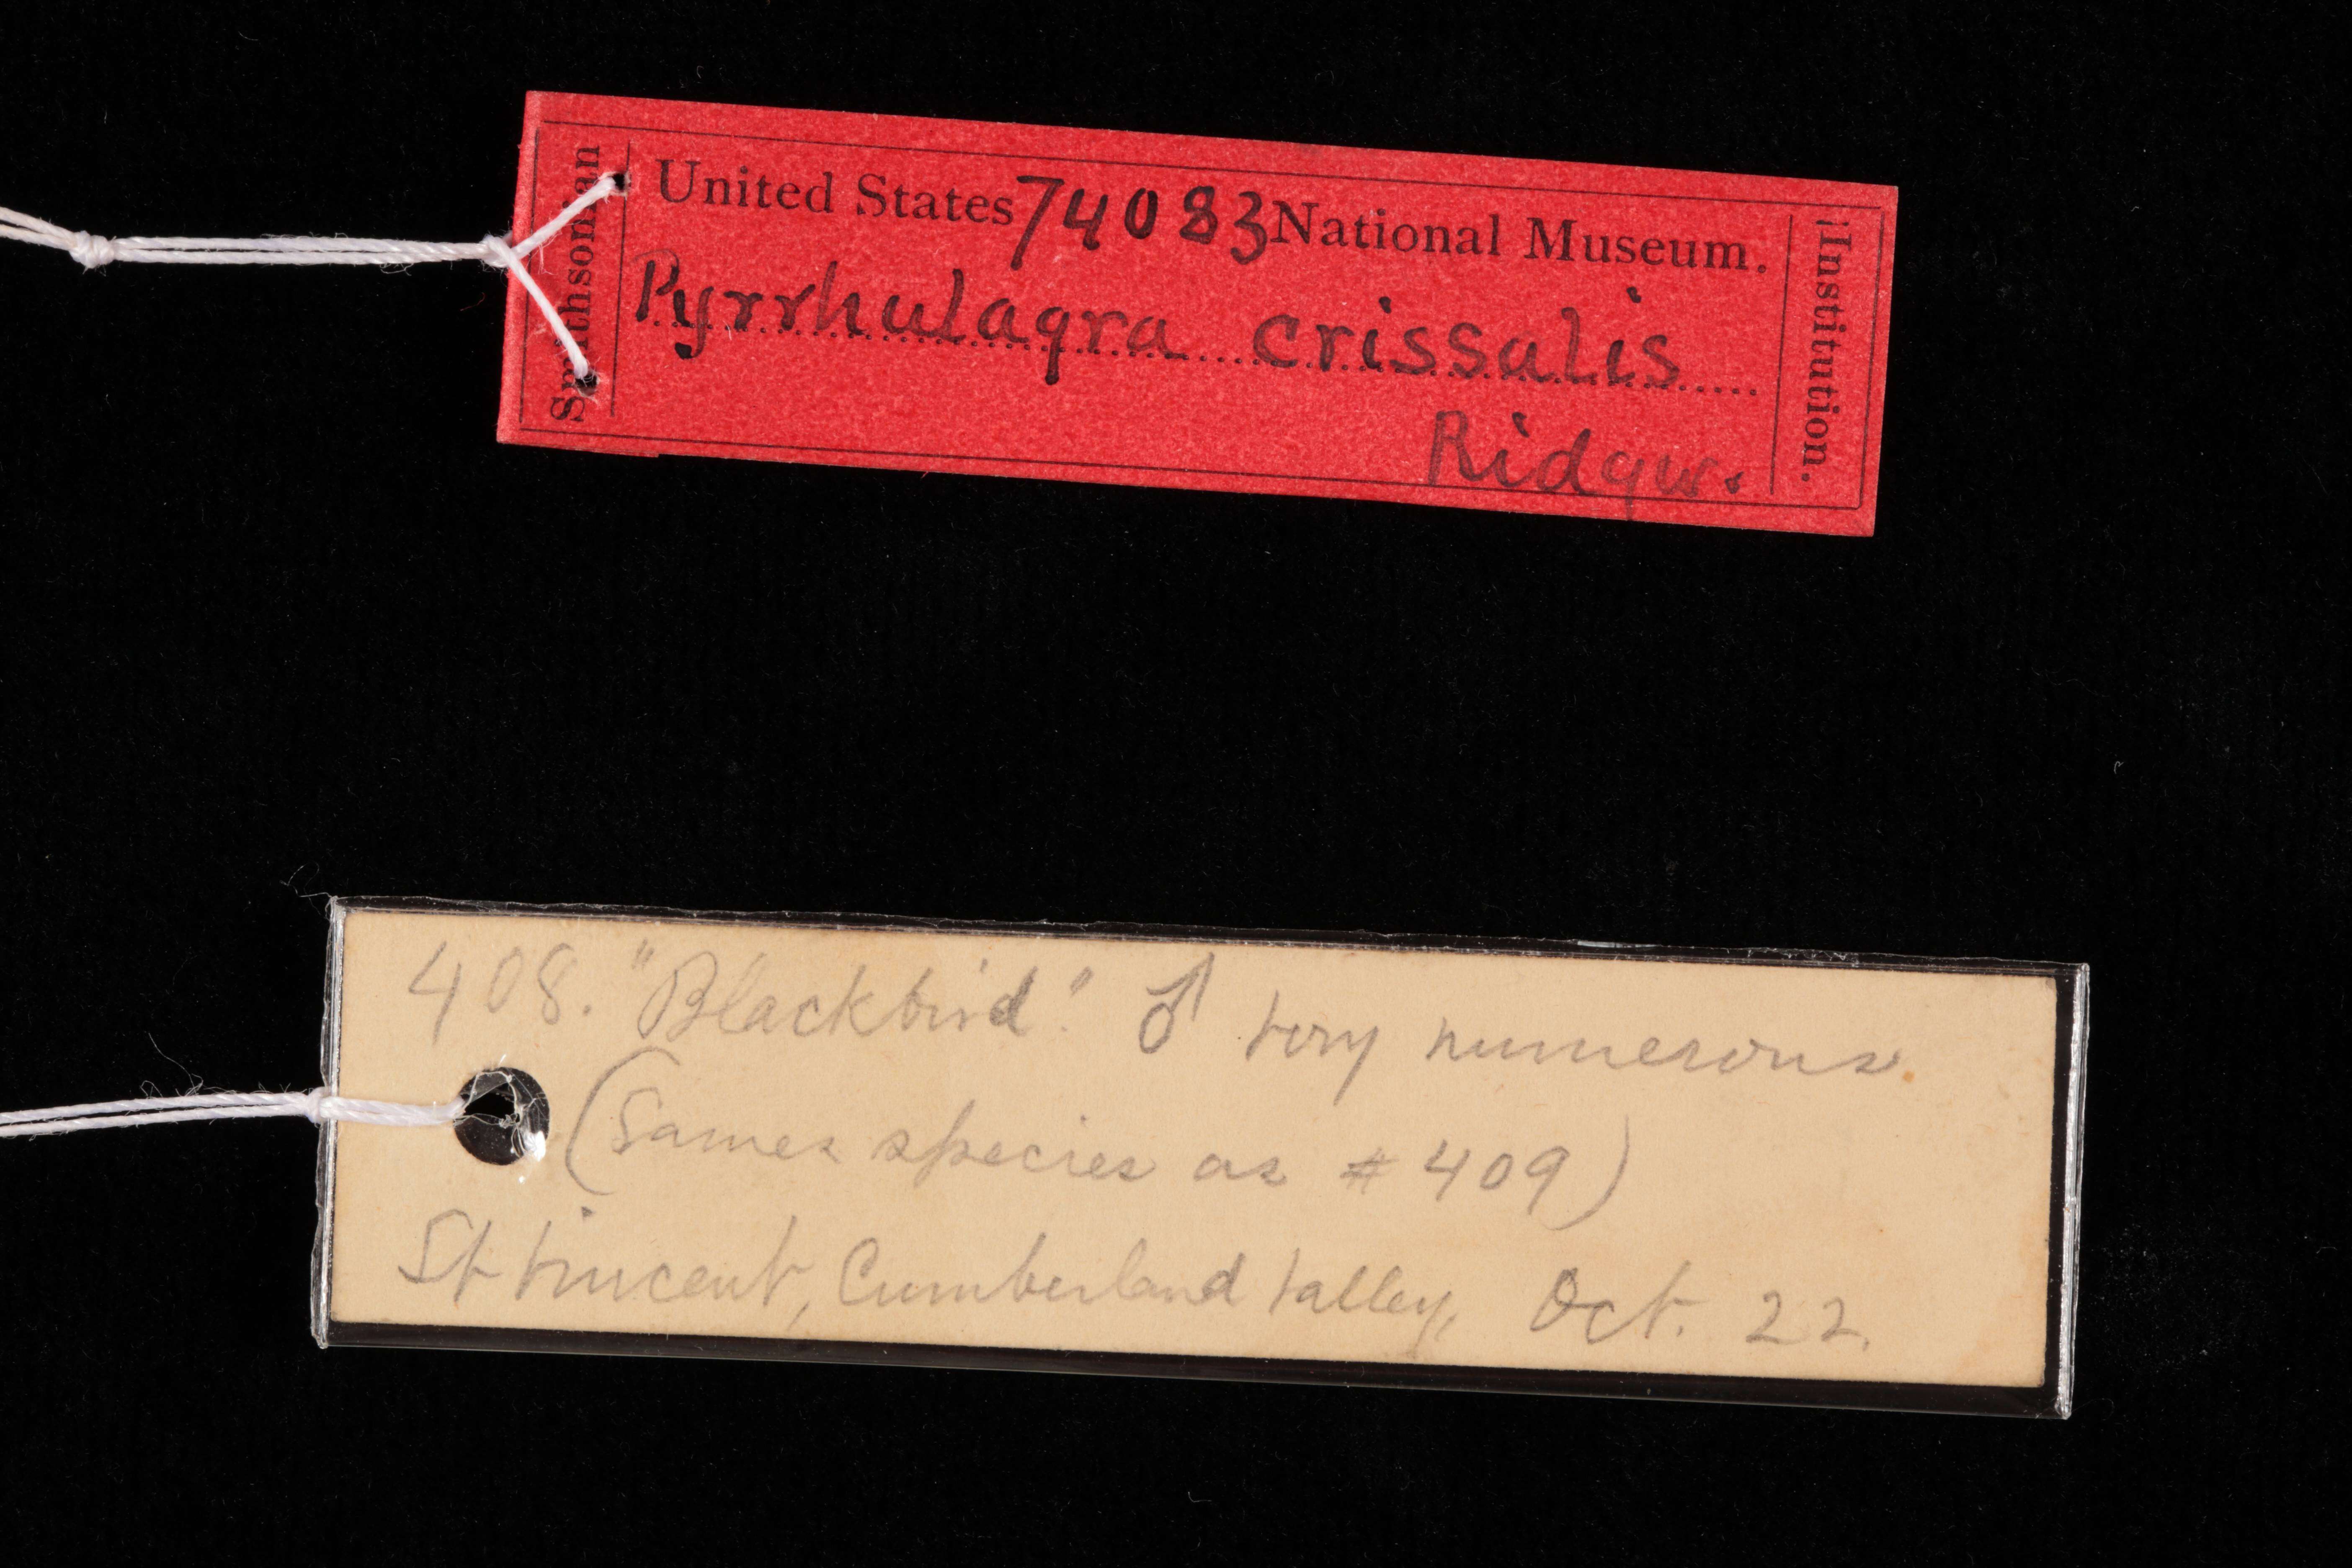 Image of Loxigilla noctis crissalis (Ridgway 1898)